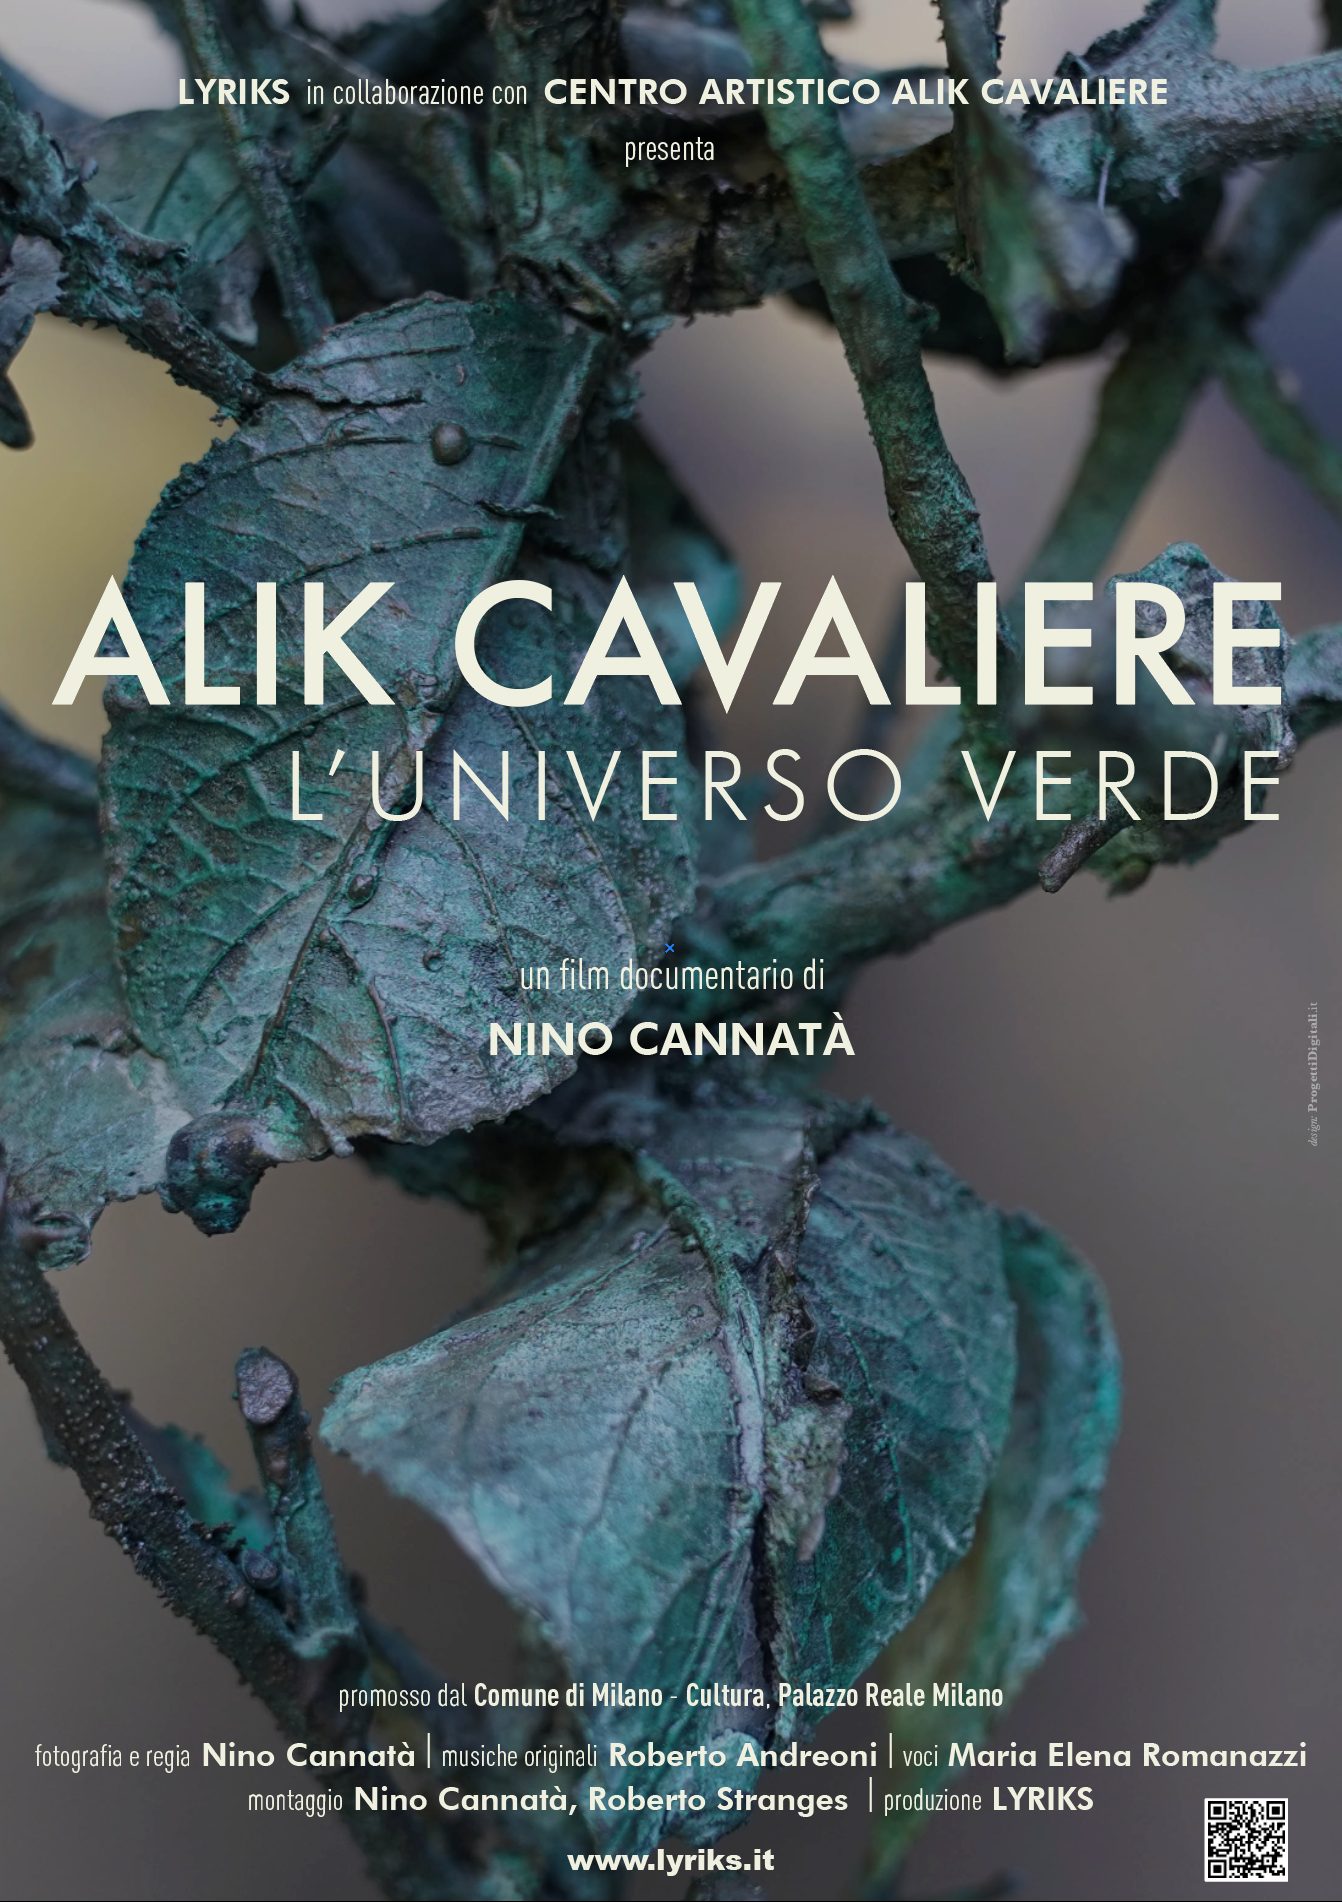 All’Accademia di Belle Arti di Catanzaro il film documentario “Alik Cavaliere, l’universo verde” di Nino Cannatà